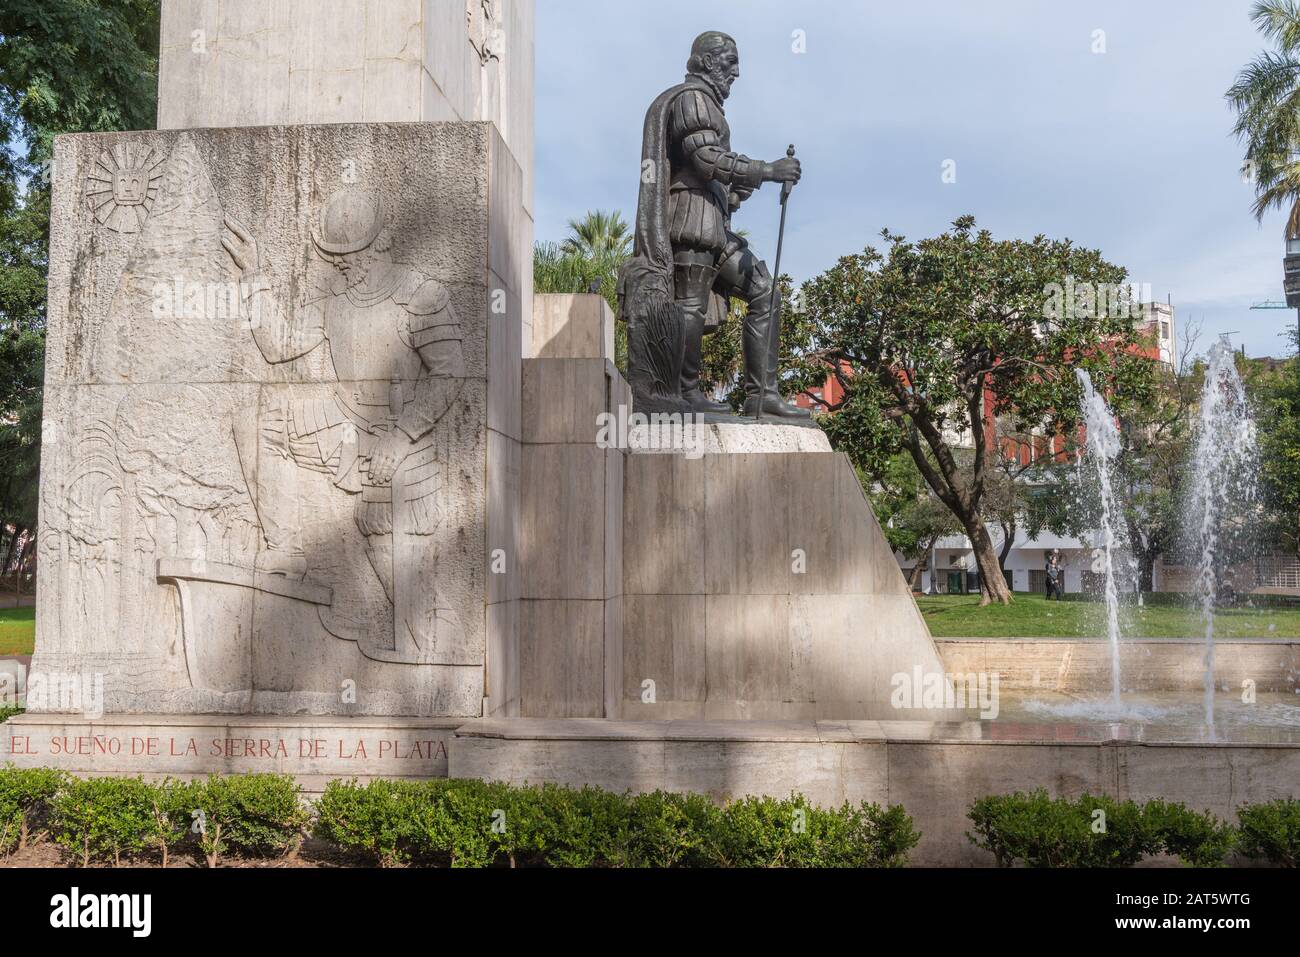 Estatua y Monumento de Don Pedro de Mendoza, fundador de Buenos Aires (1536), Parque Lezama, San Telmo, Buenos Aires, Argentina, América Latina Foto de stock